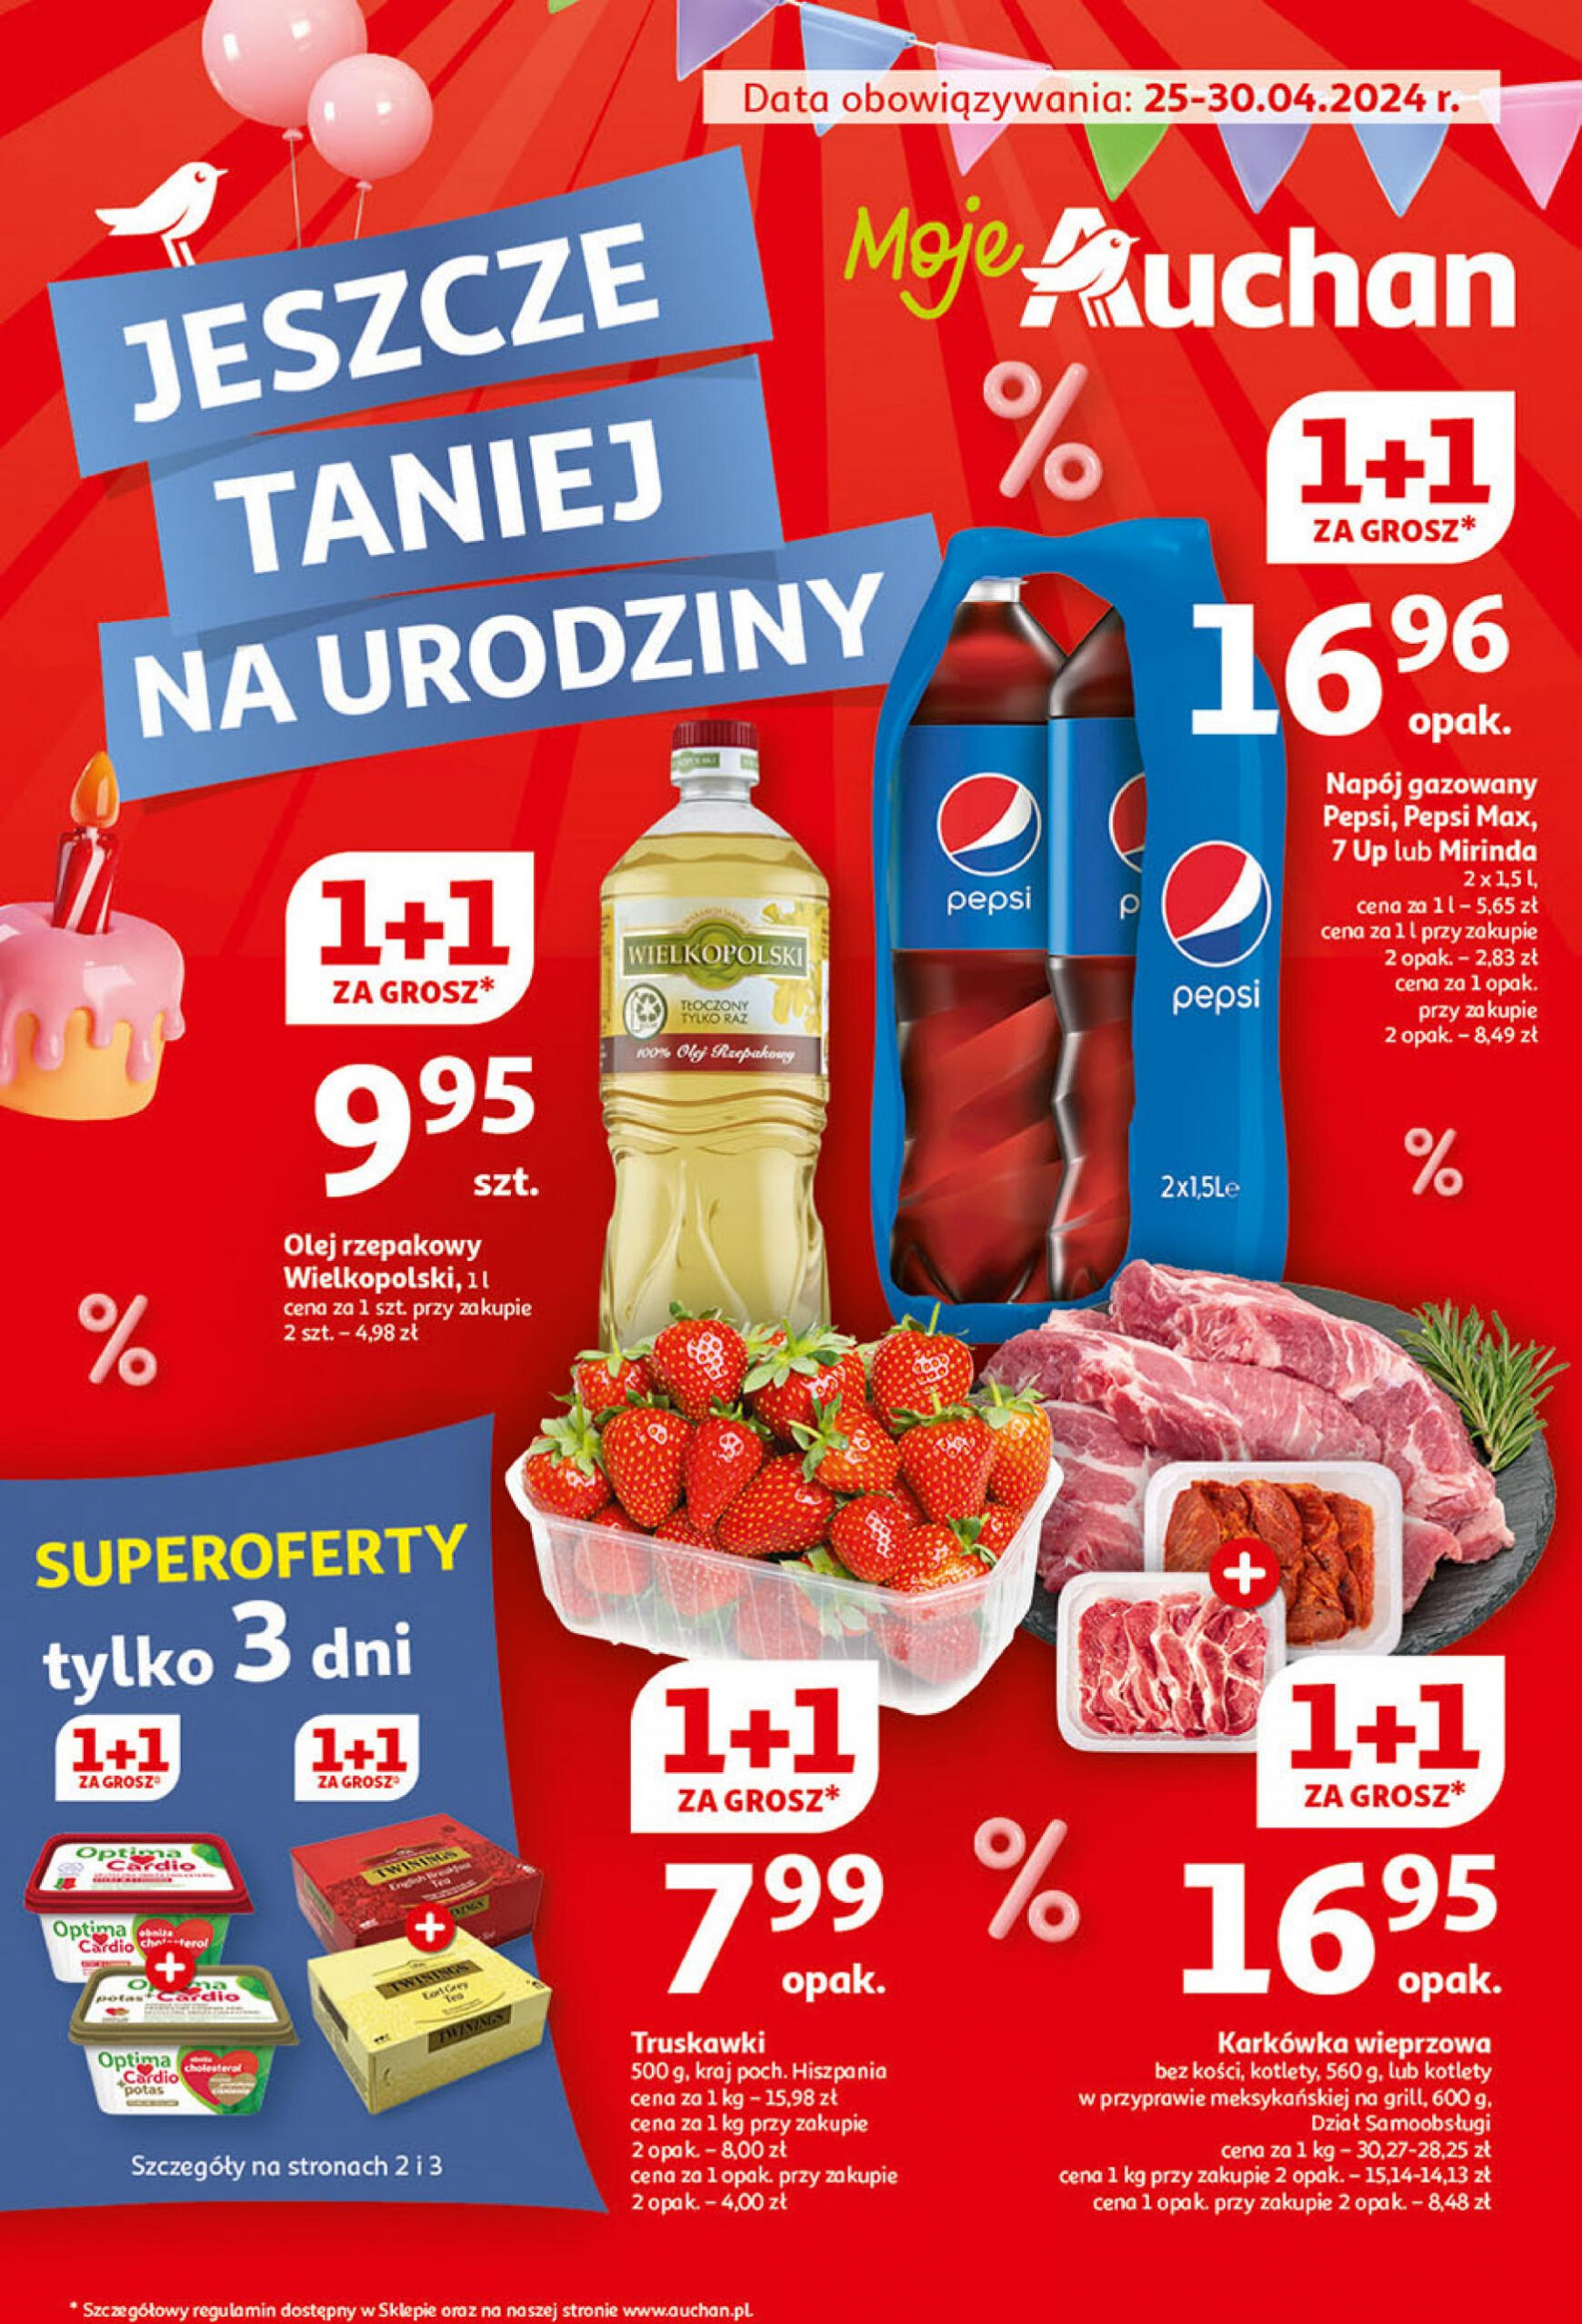 auchan - Moje Auchan - Gazetka Jeszcze taniej na urodziny gazetka aktualna ważna od 25.04. - 30.04. - page: 1